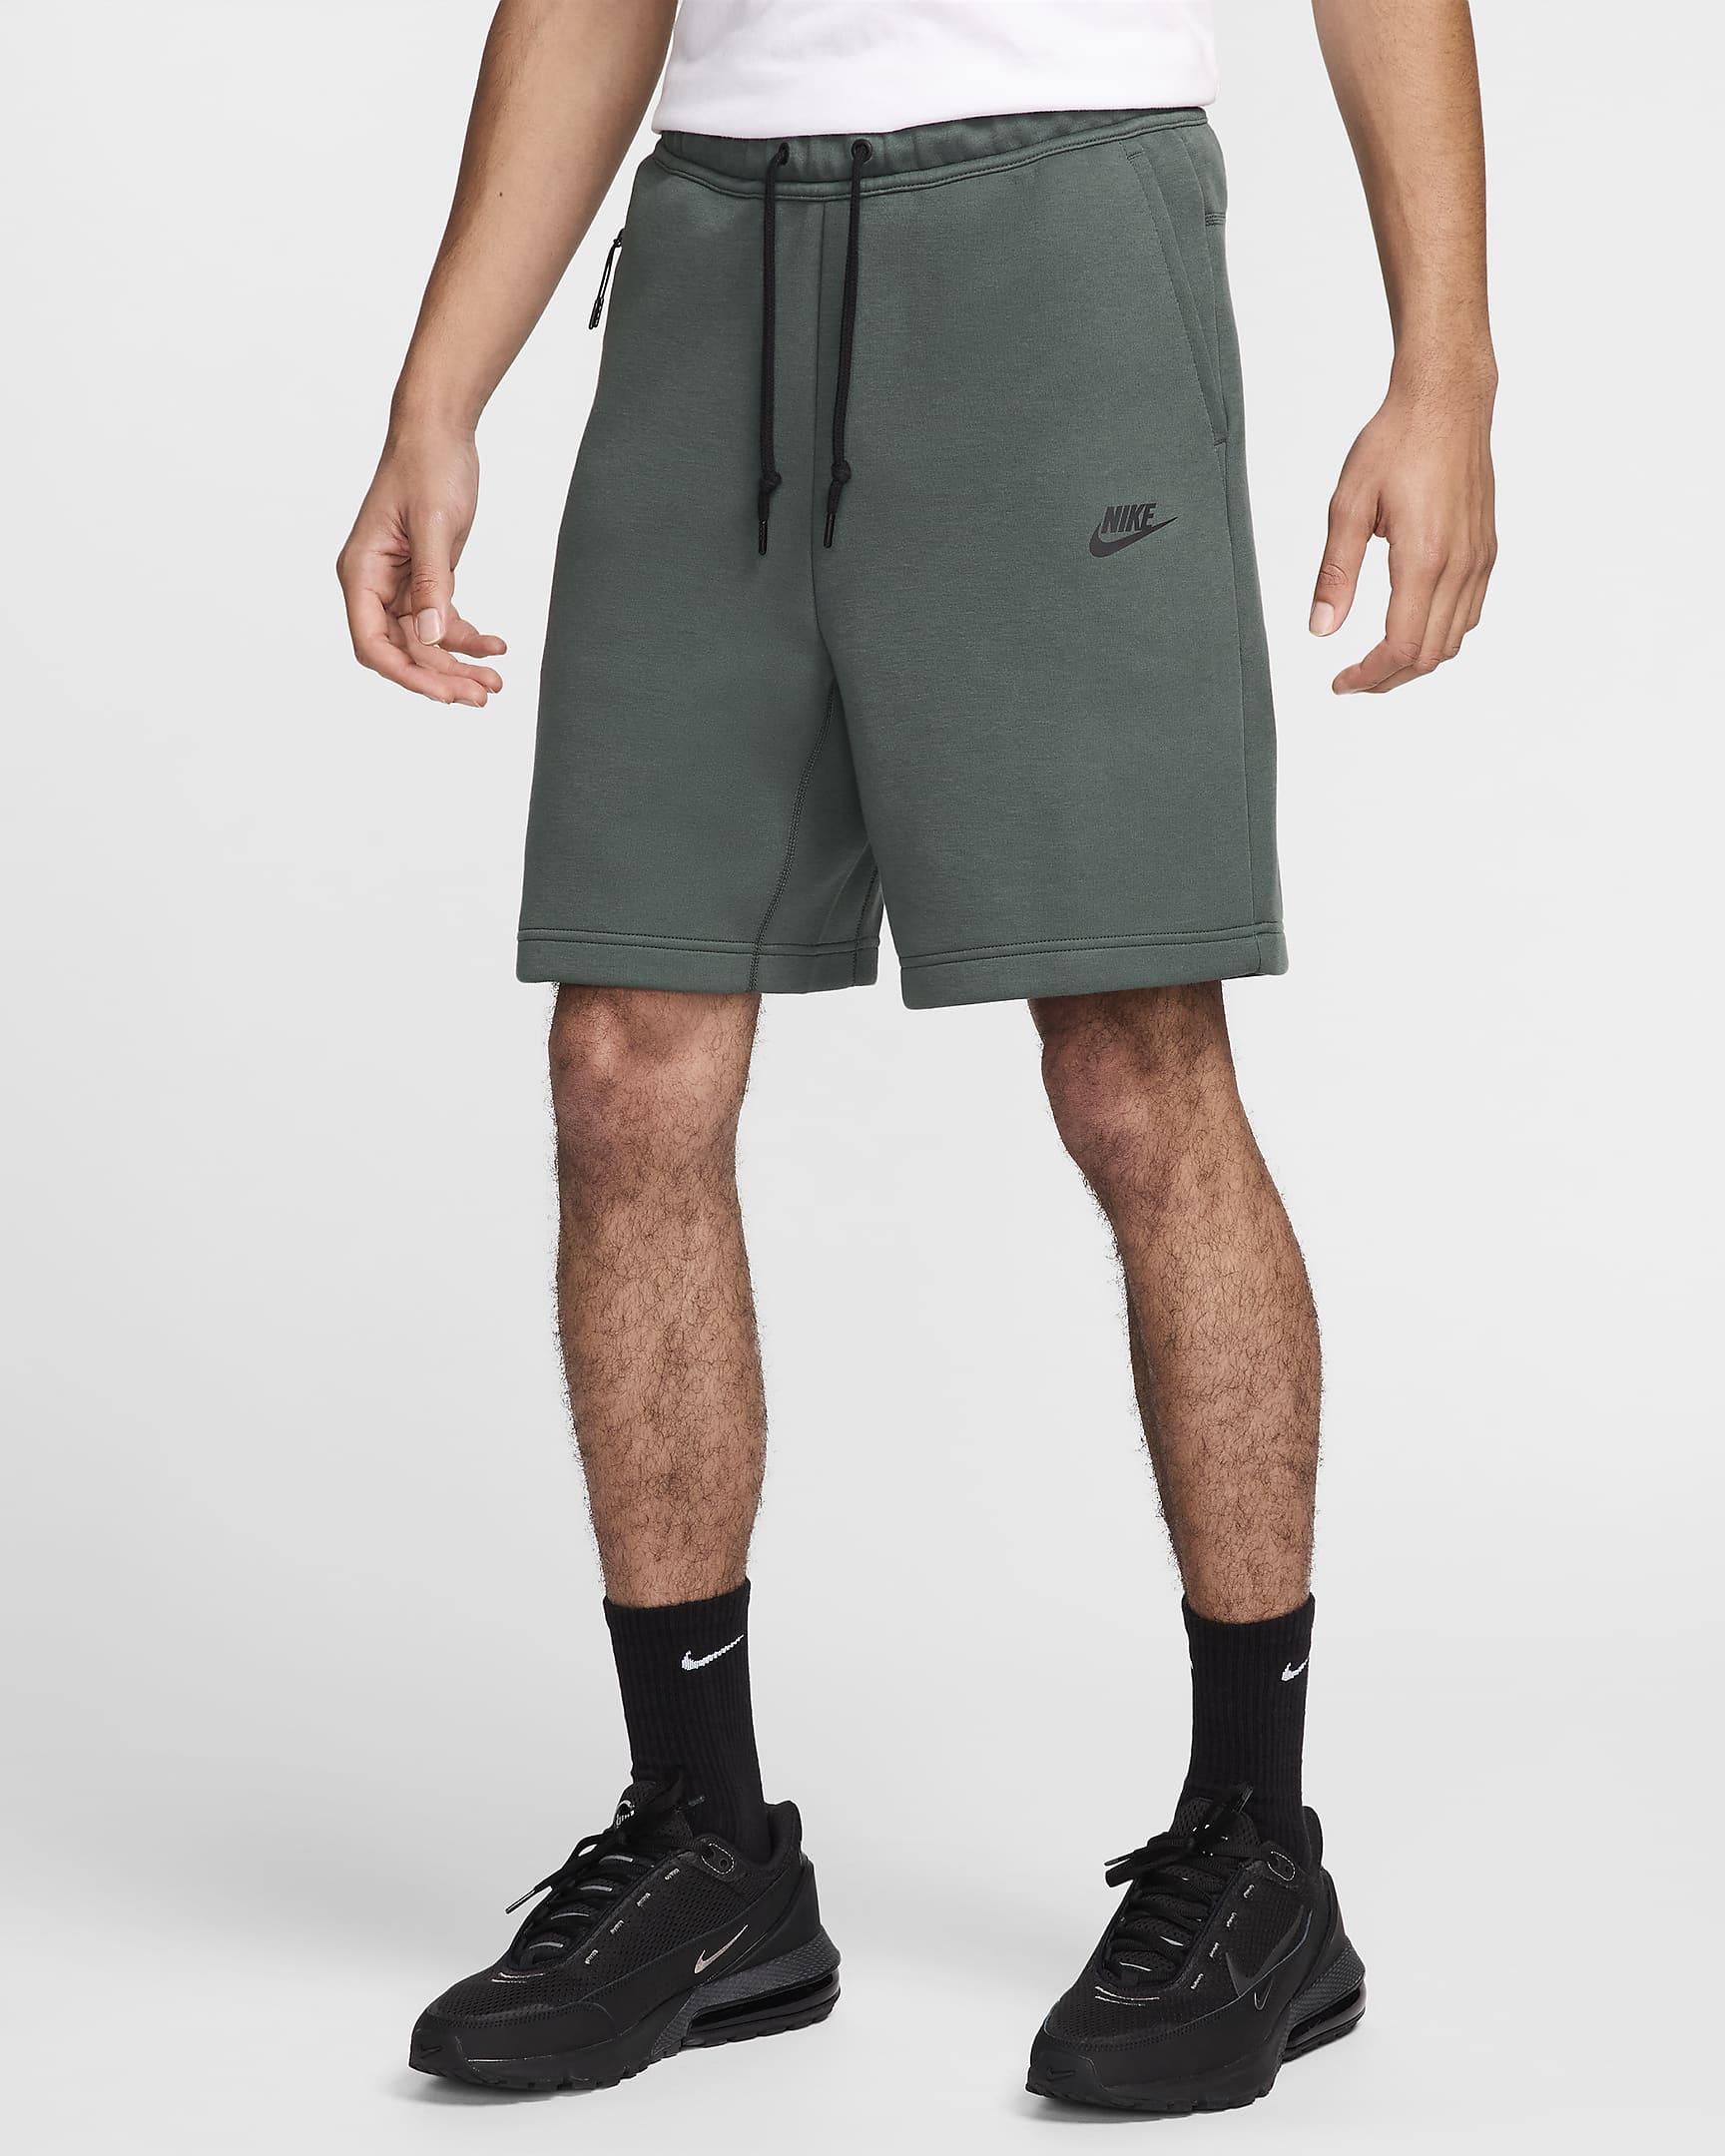 Calções Nike Sportswear Tech Fleece para homem - Verde Vintage/Preto